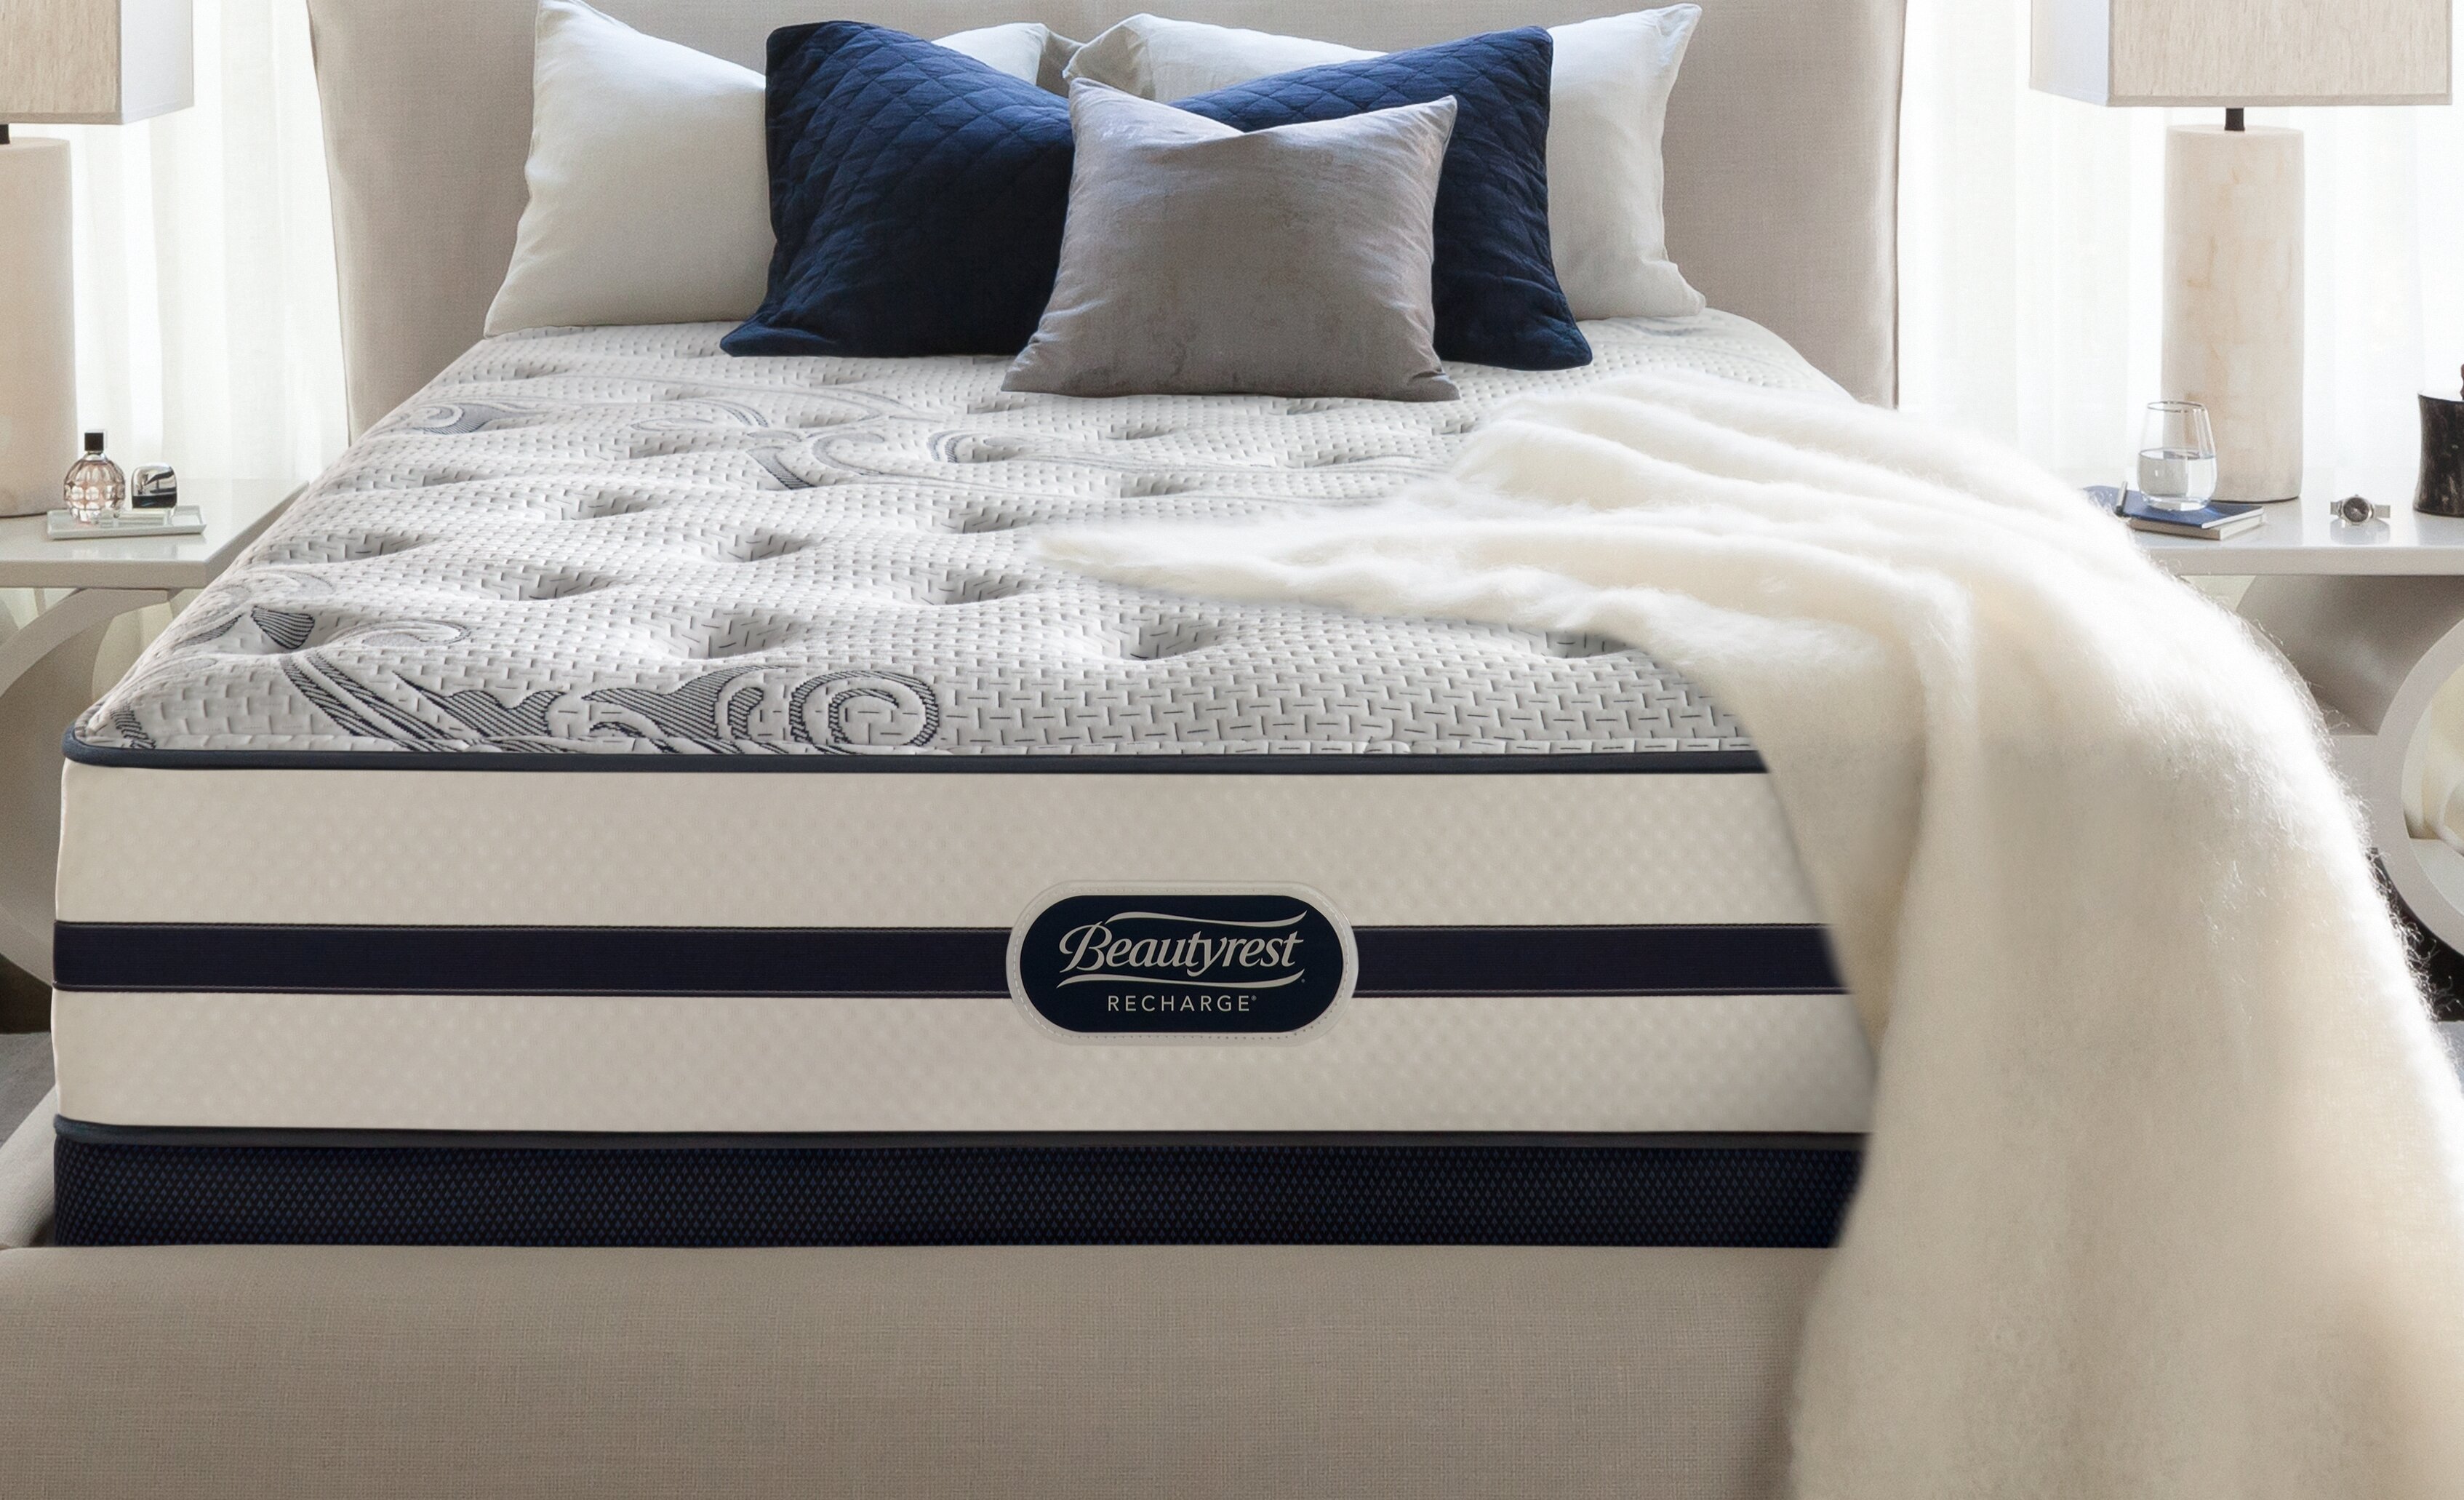 beautyrest recharge world class mattress firm